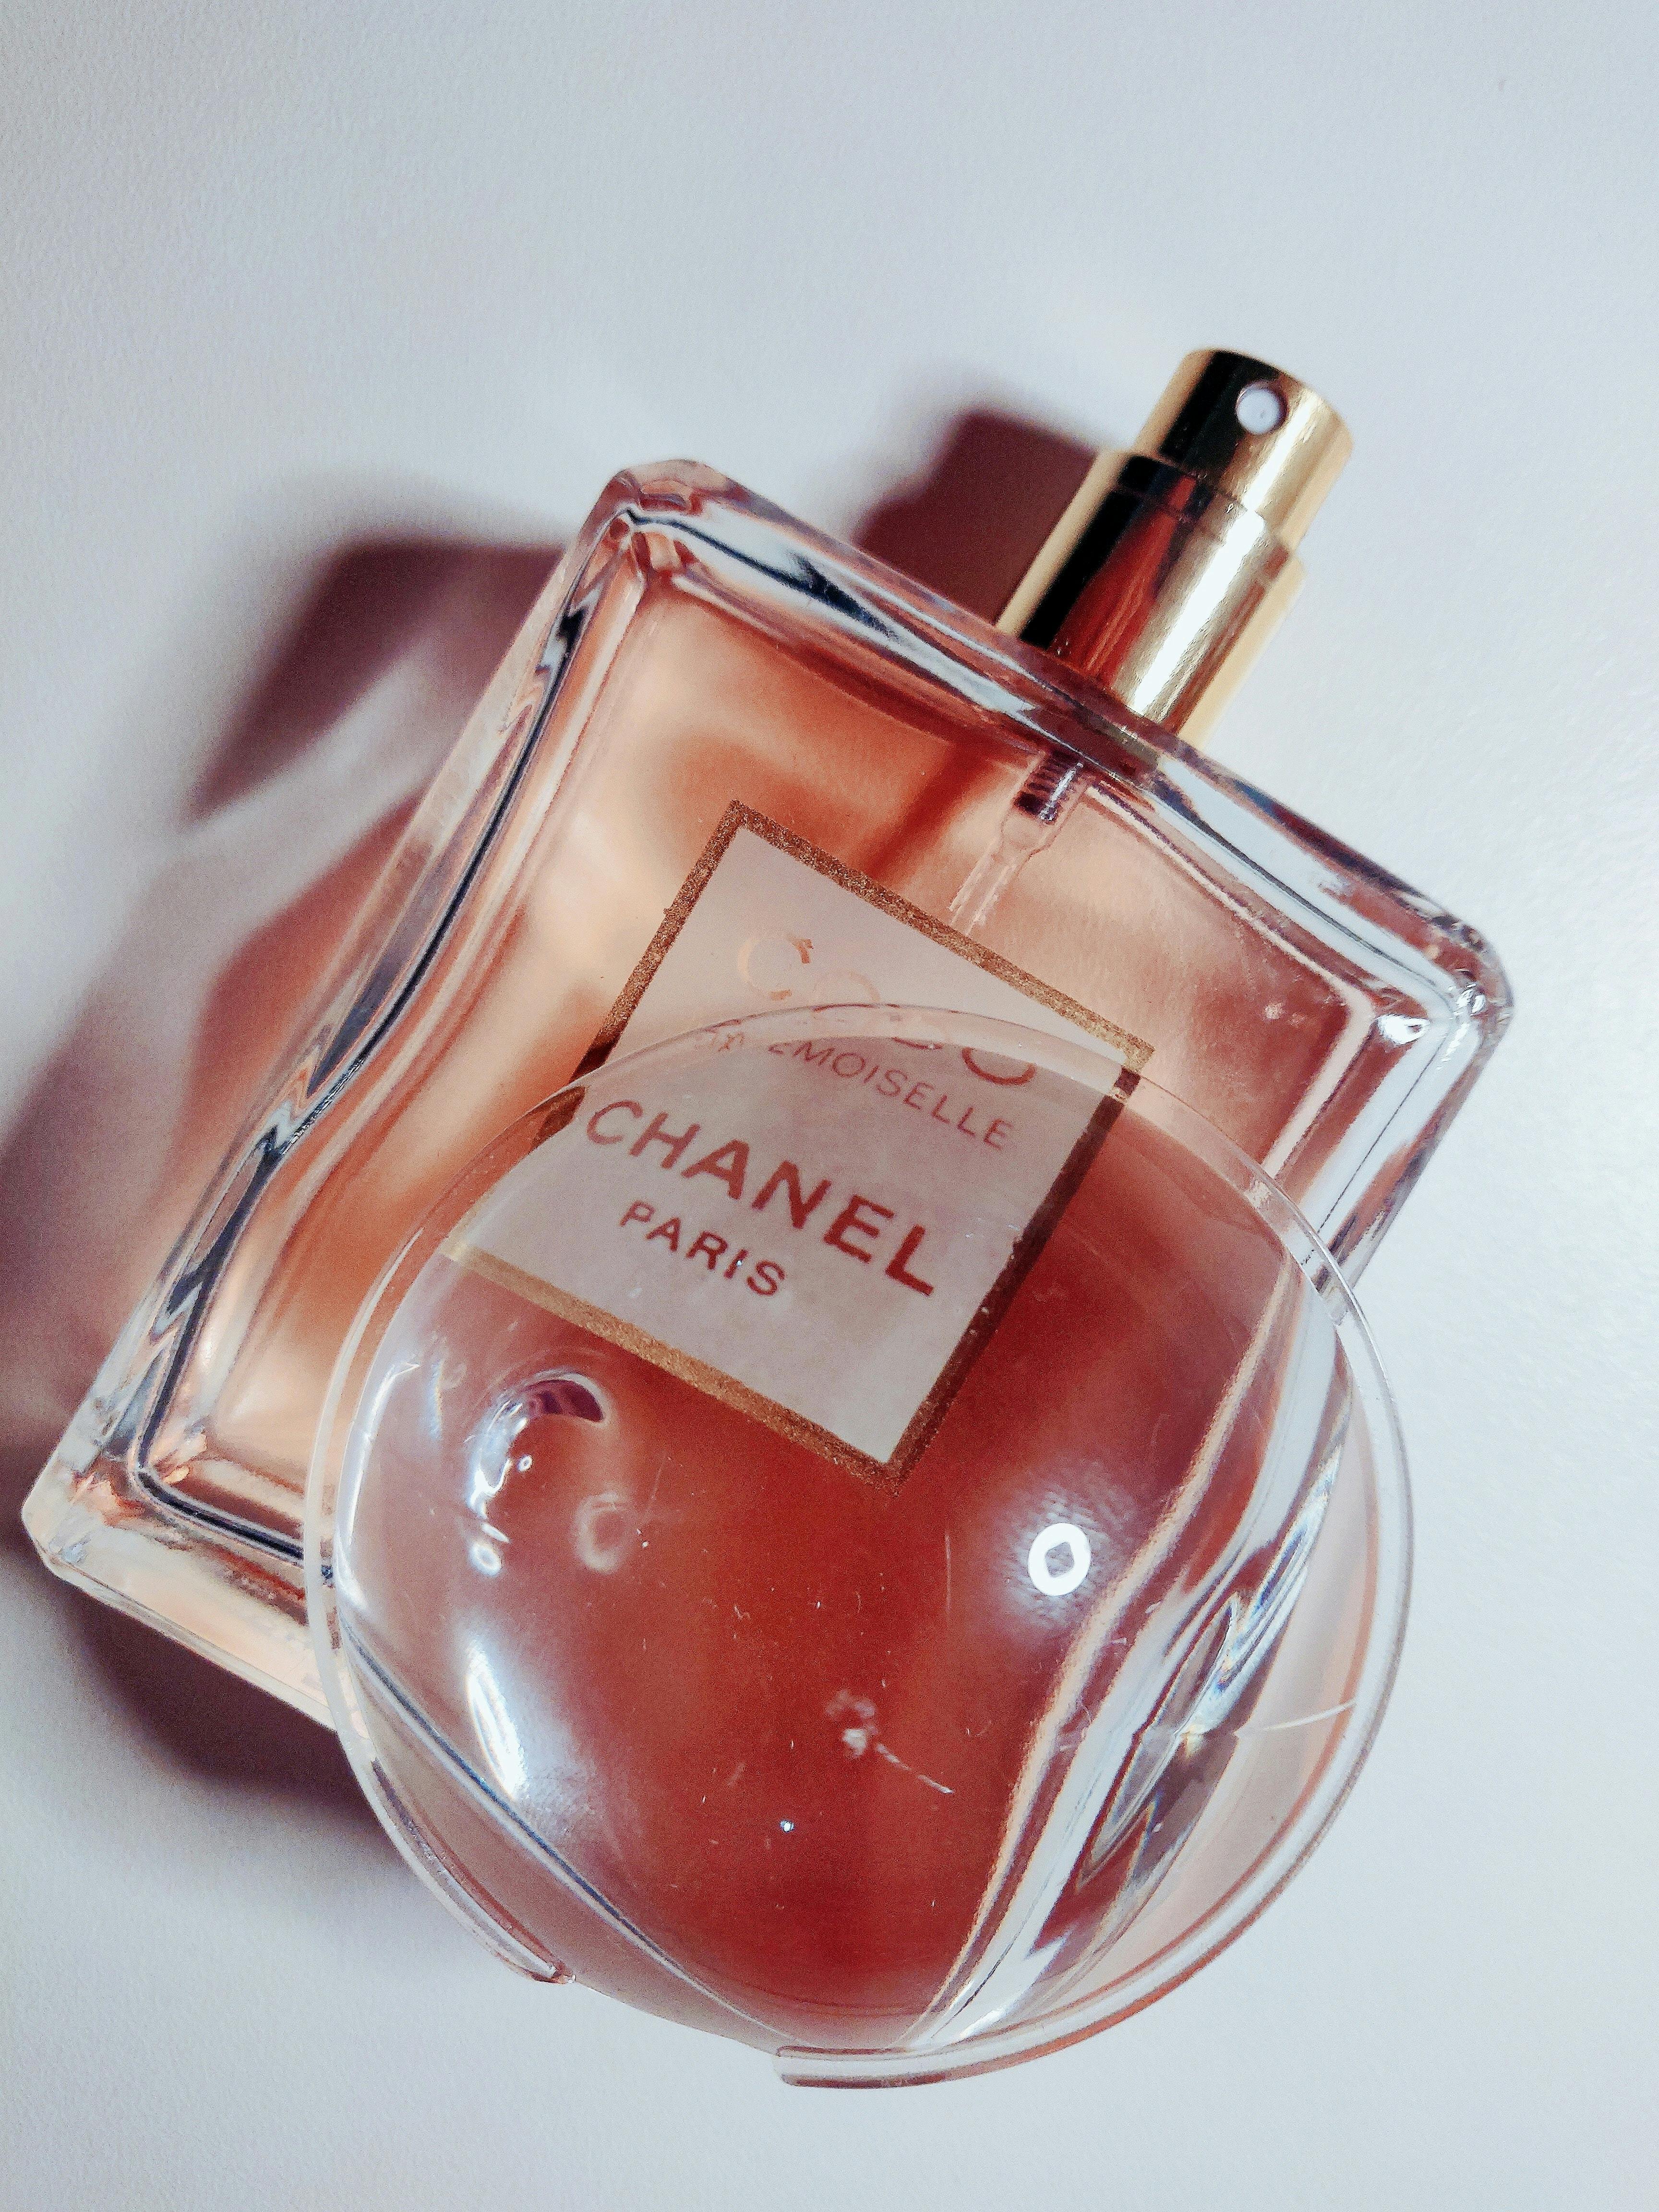 No 5 Chanel fragrance bottle photo – Free Fashion Image on Unsplash